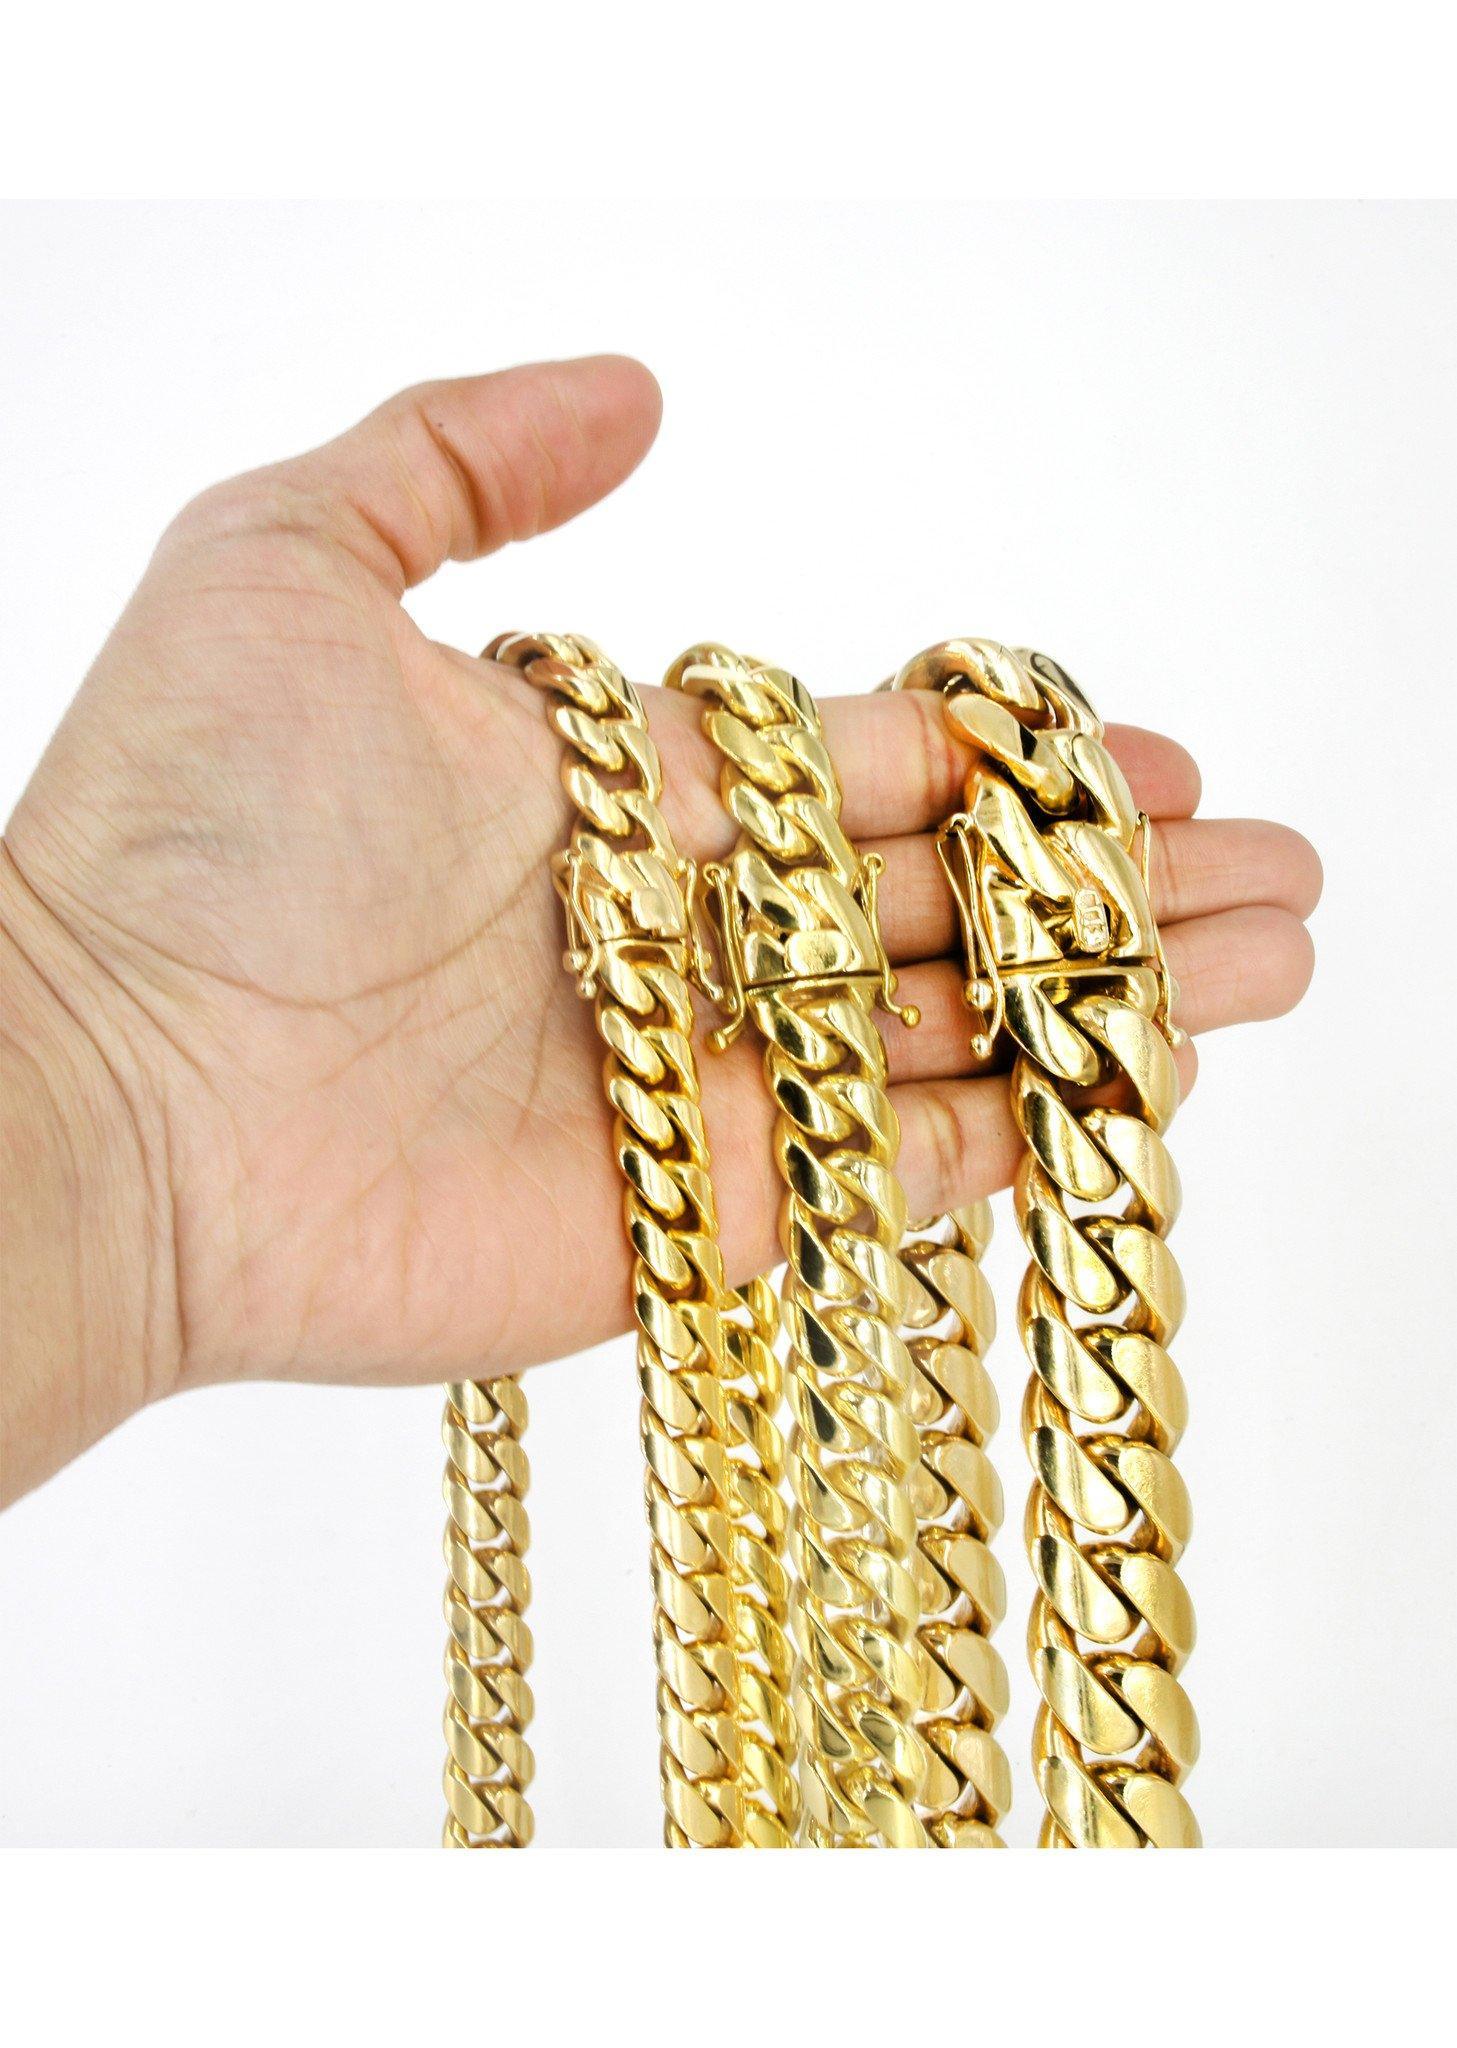 Gold Jewelry - Mr. Alex Jewelry